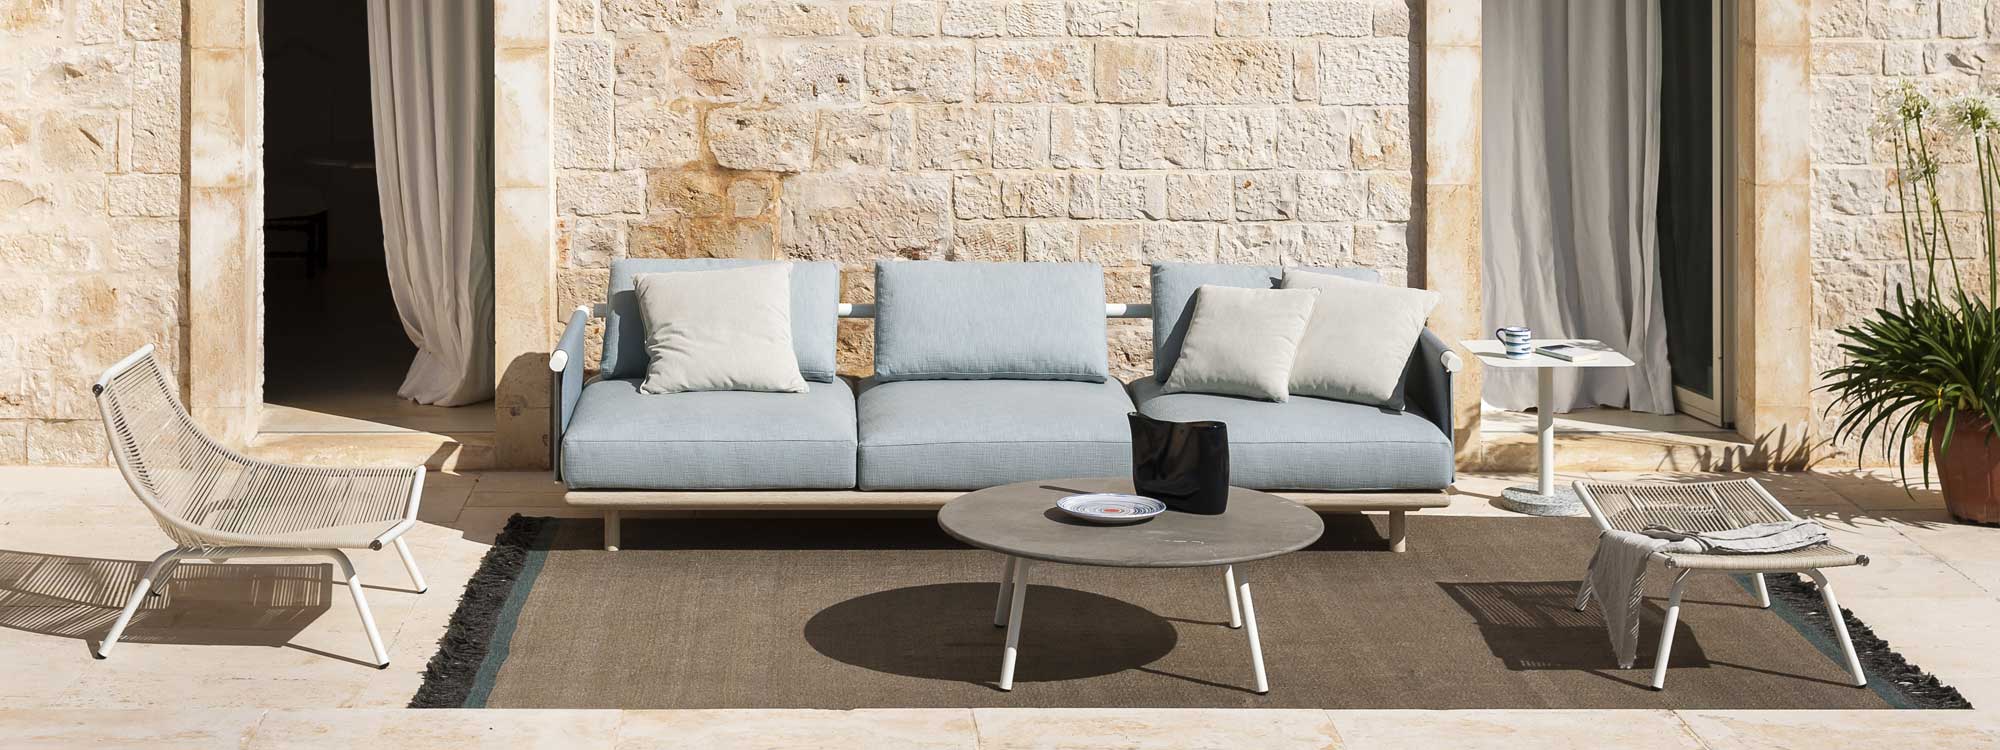 Eden garden sofa can be configured into a corner sofa or individual sofa